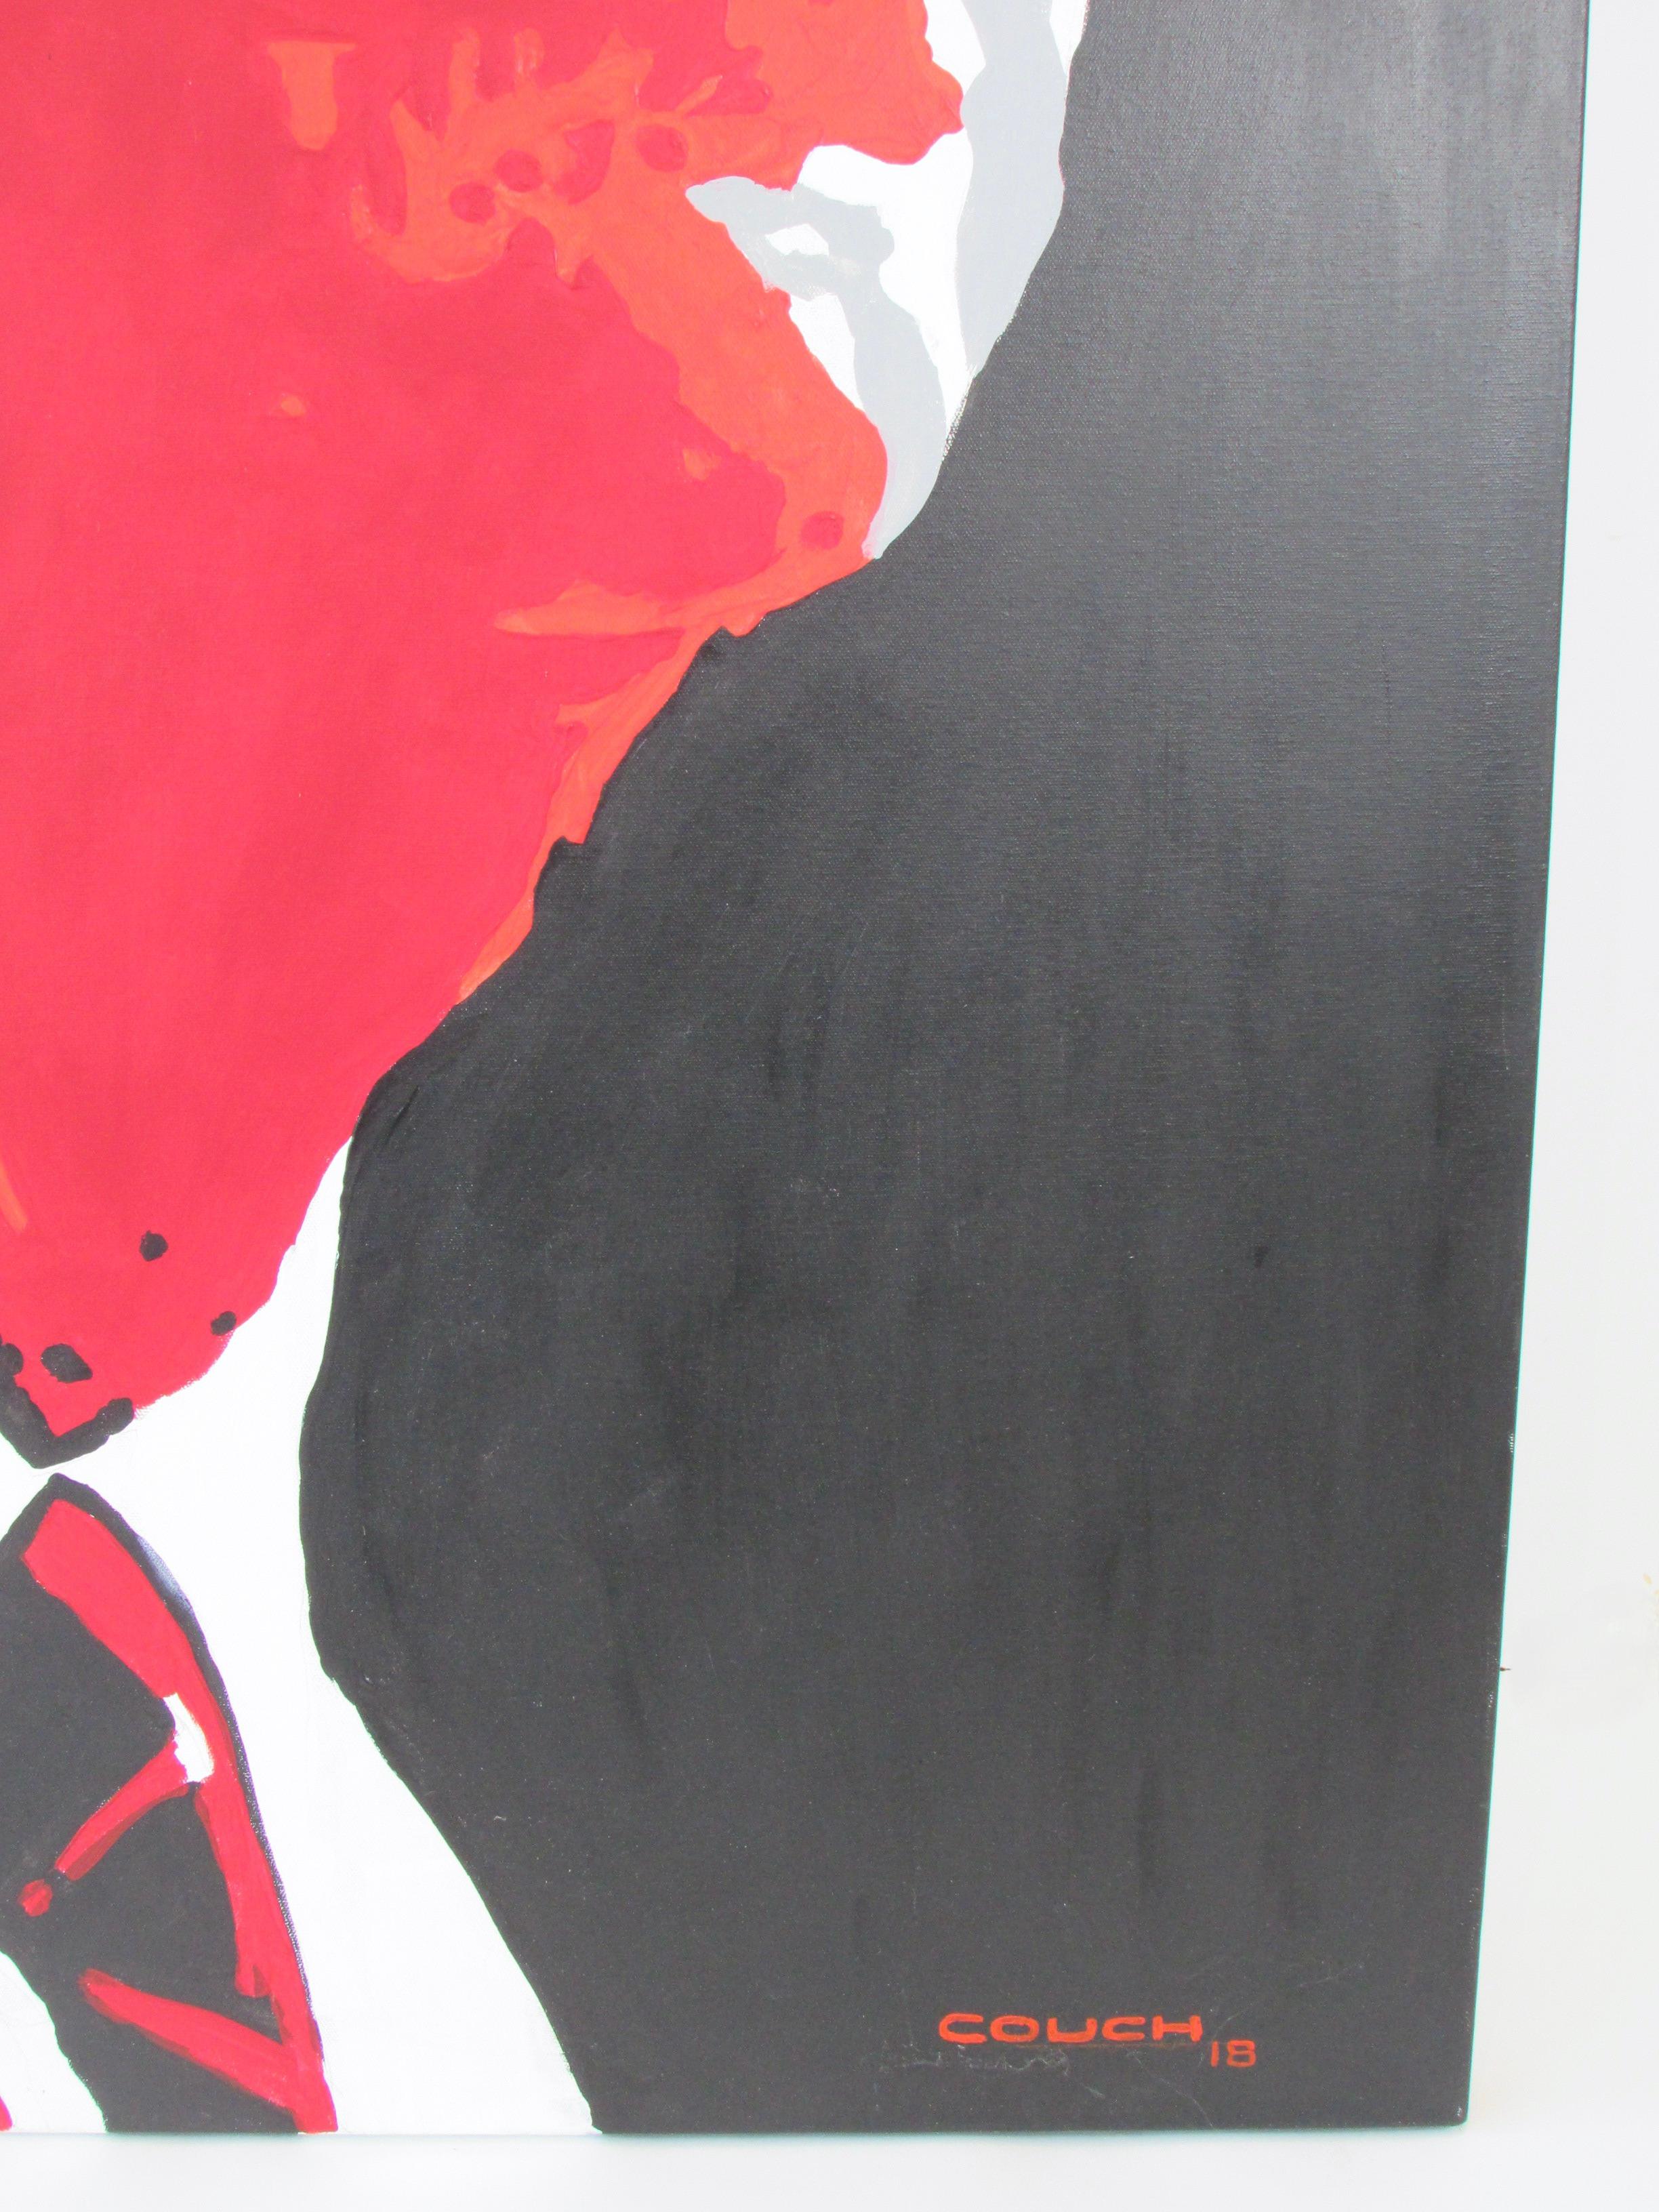 Großes Gemälde des großen Künstlers Billy Couch aus Detroit auf Leinwand, Acryl auf Leinwand, Enzo Ferrari im Angebot 3